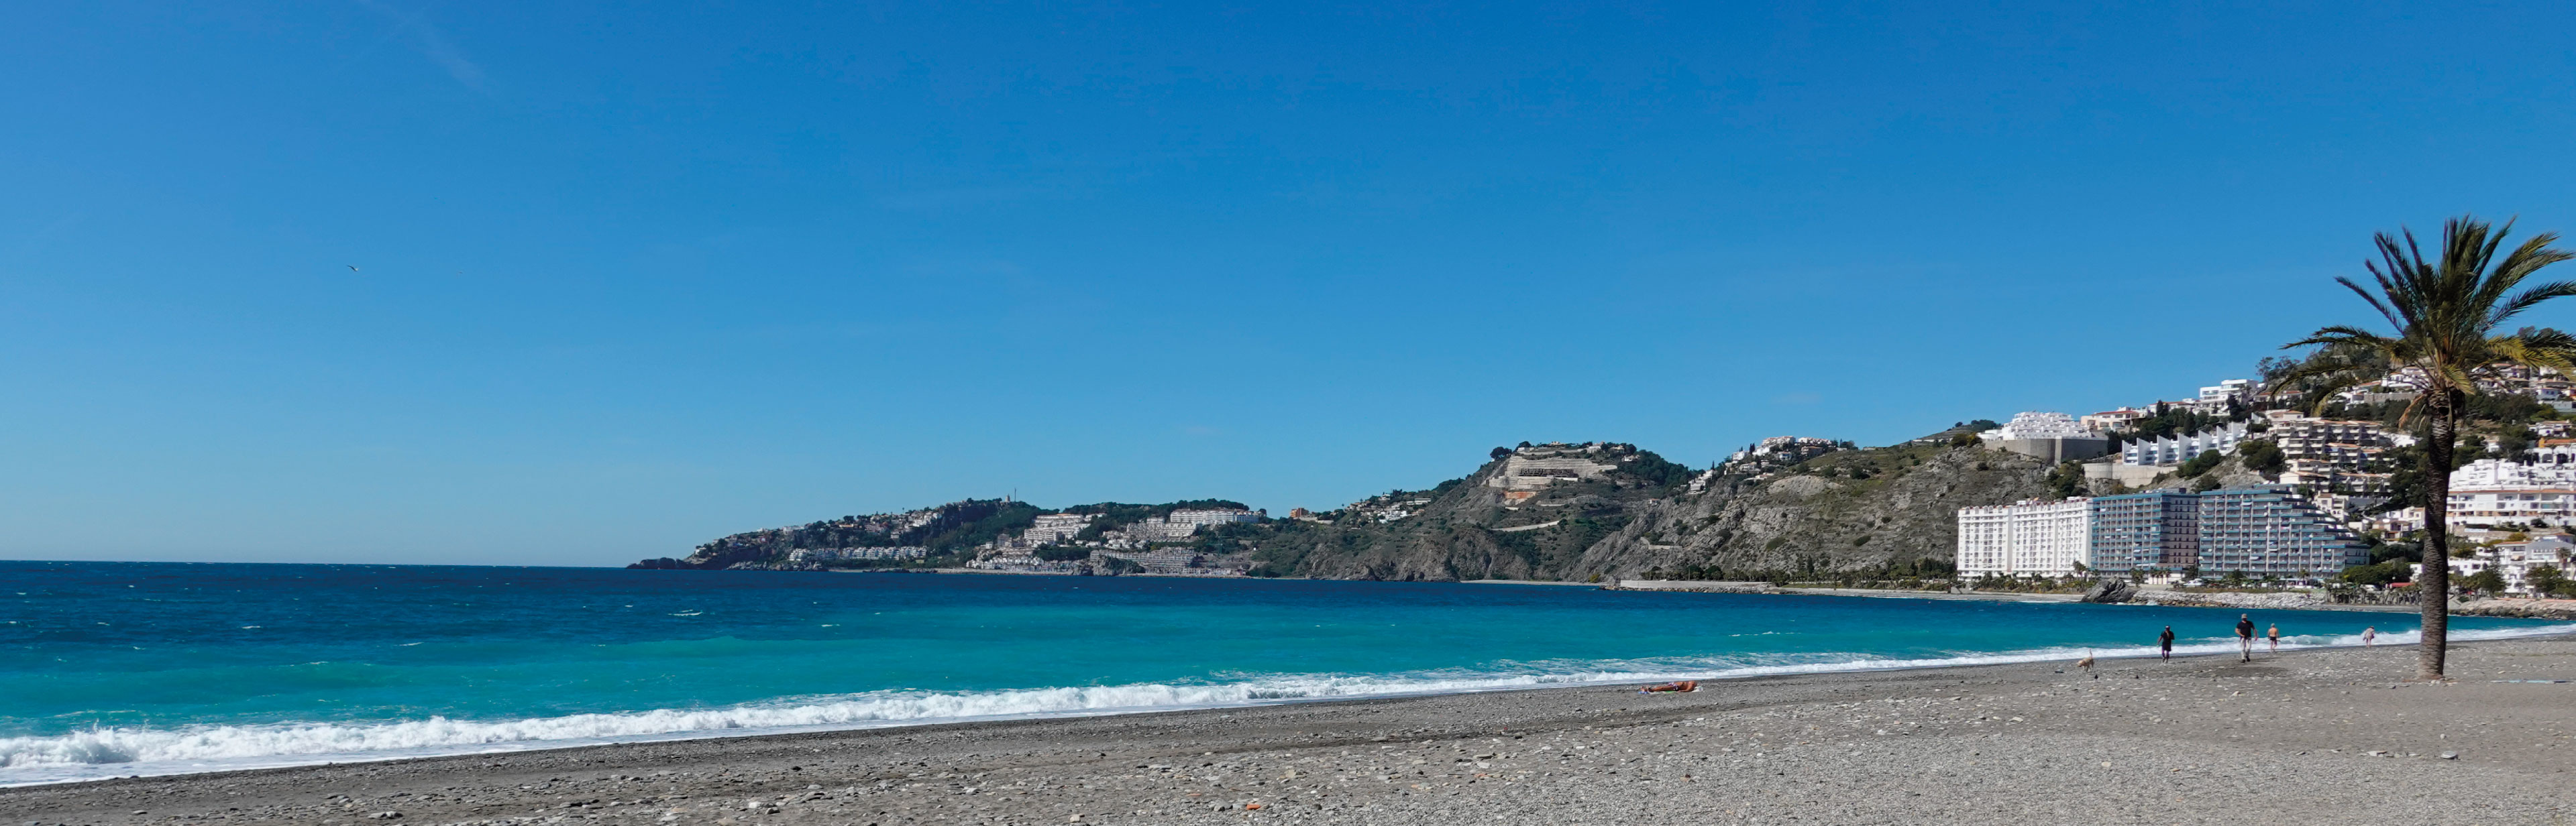 De prachtigste playas van Torre del Mar en Nerja op respectievelijk 20 en 35 minuten rijden